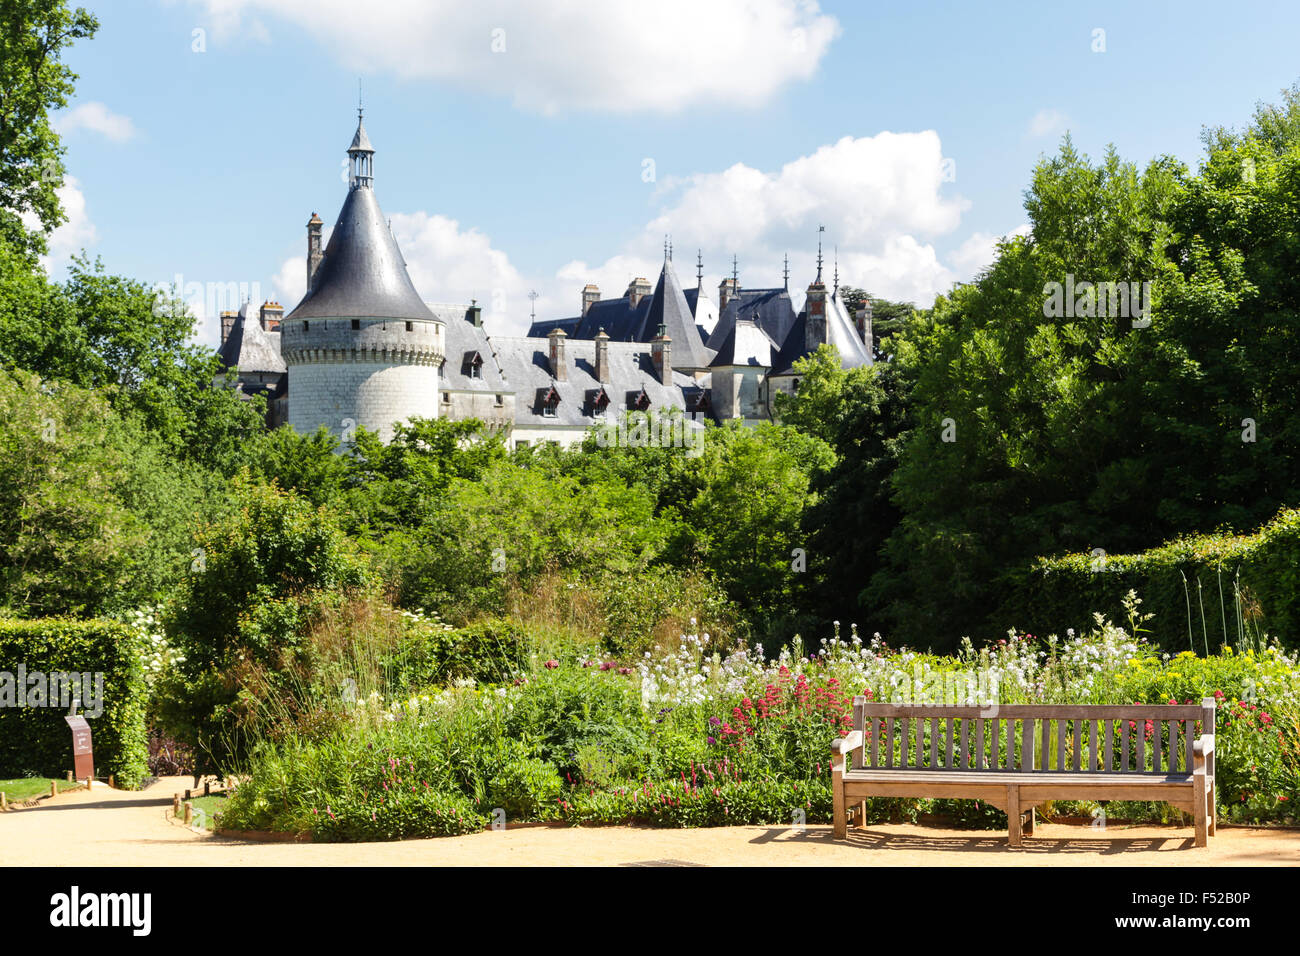 Festival internacional de jardines chateau Chaumont-sur-Loire, Francia Foto de stock